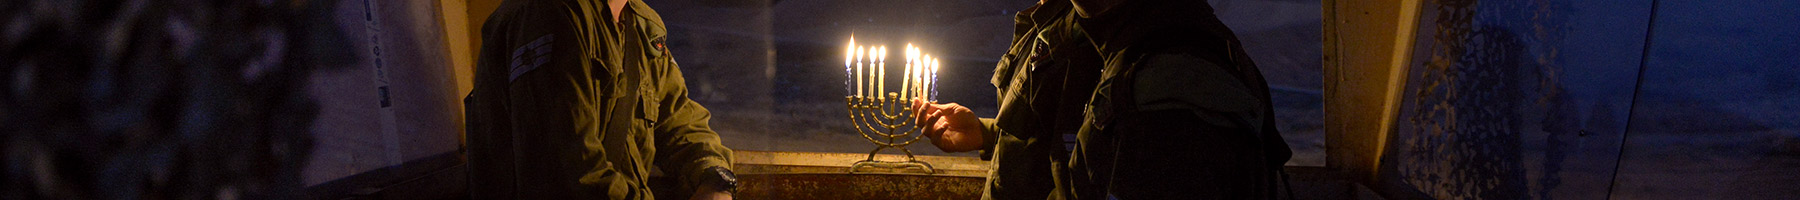 soldiers lighting a menorah